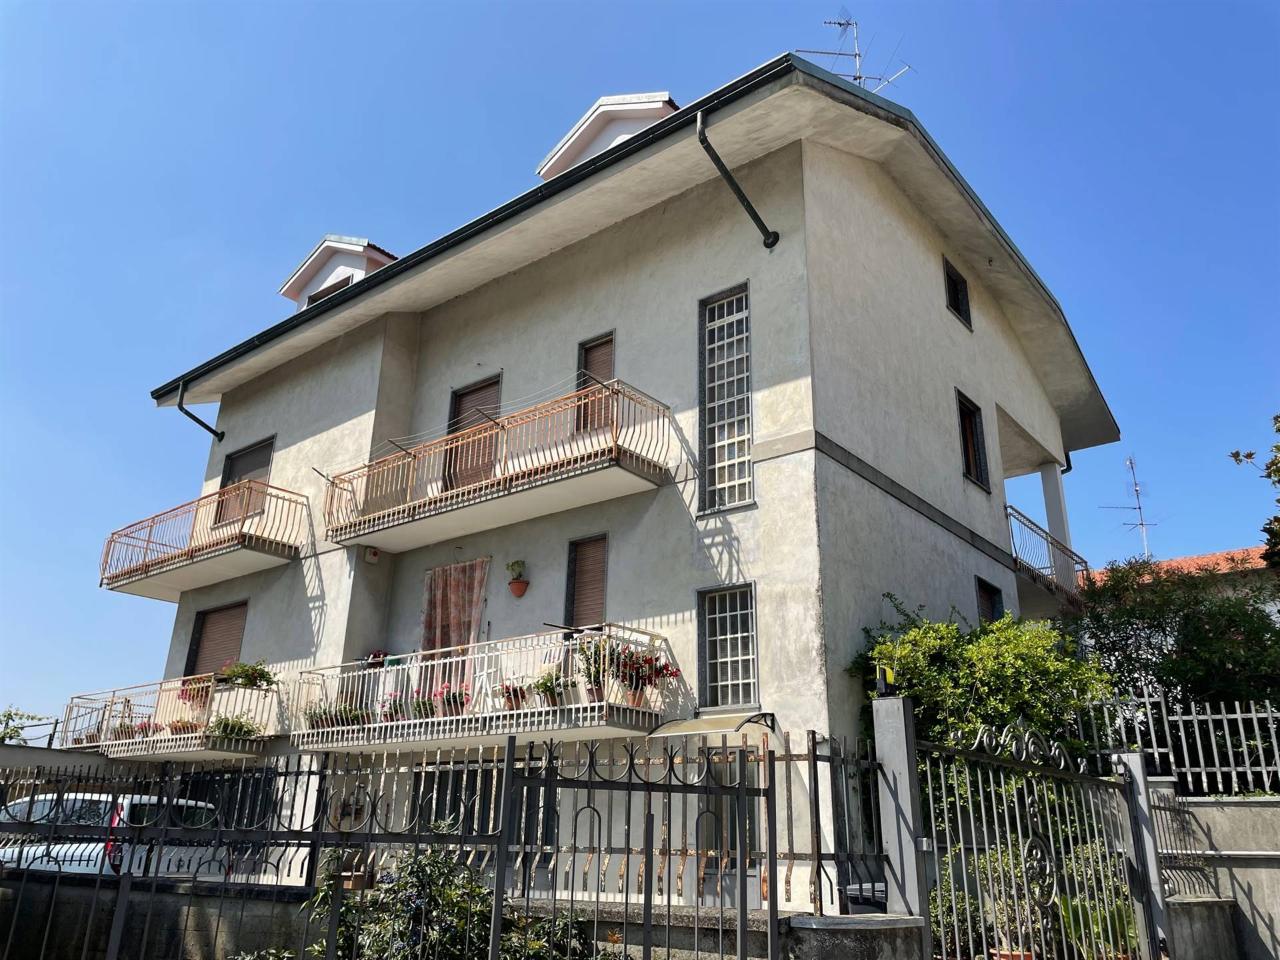 Villa in vendita a San Giorgio Monferrato